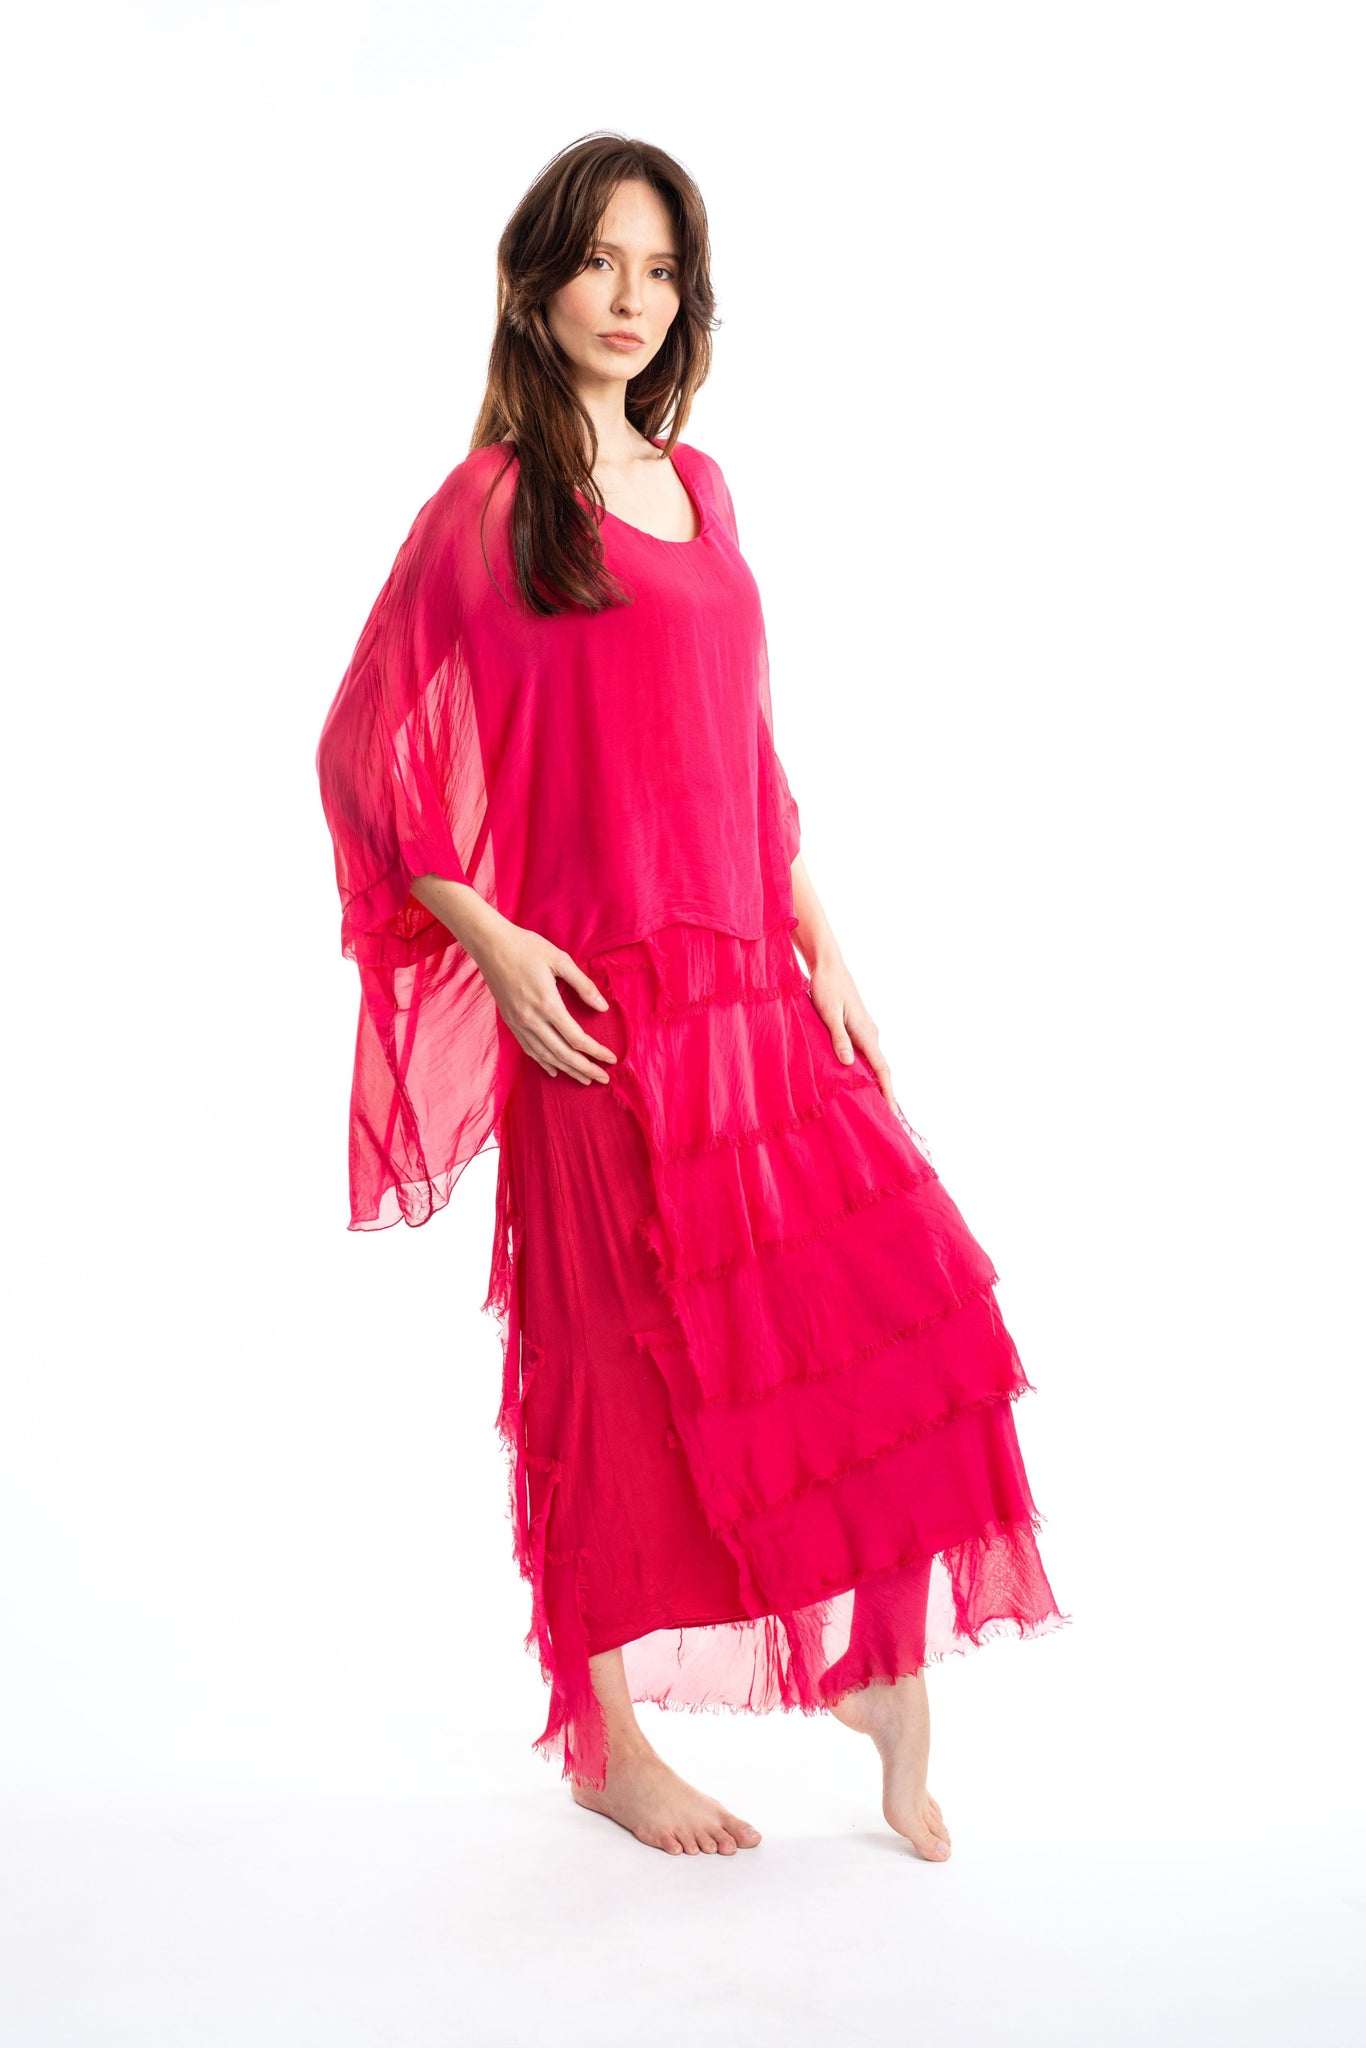 DP S23 Silk Pink Dress